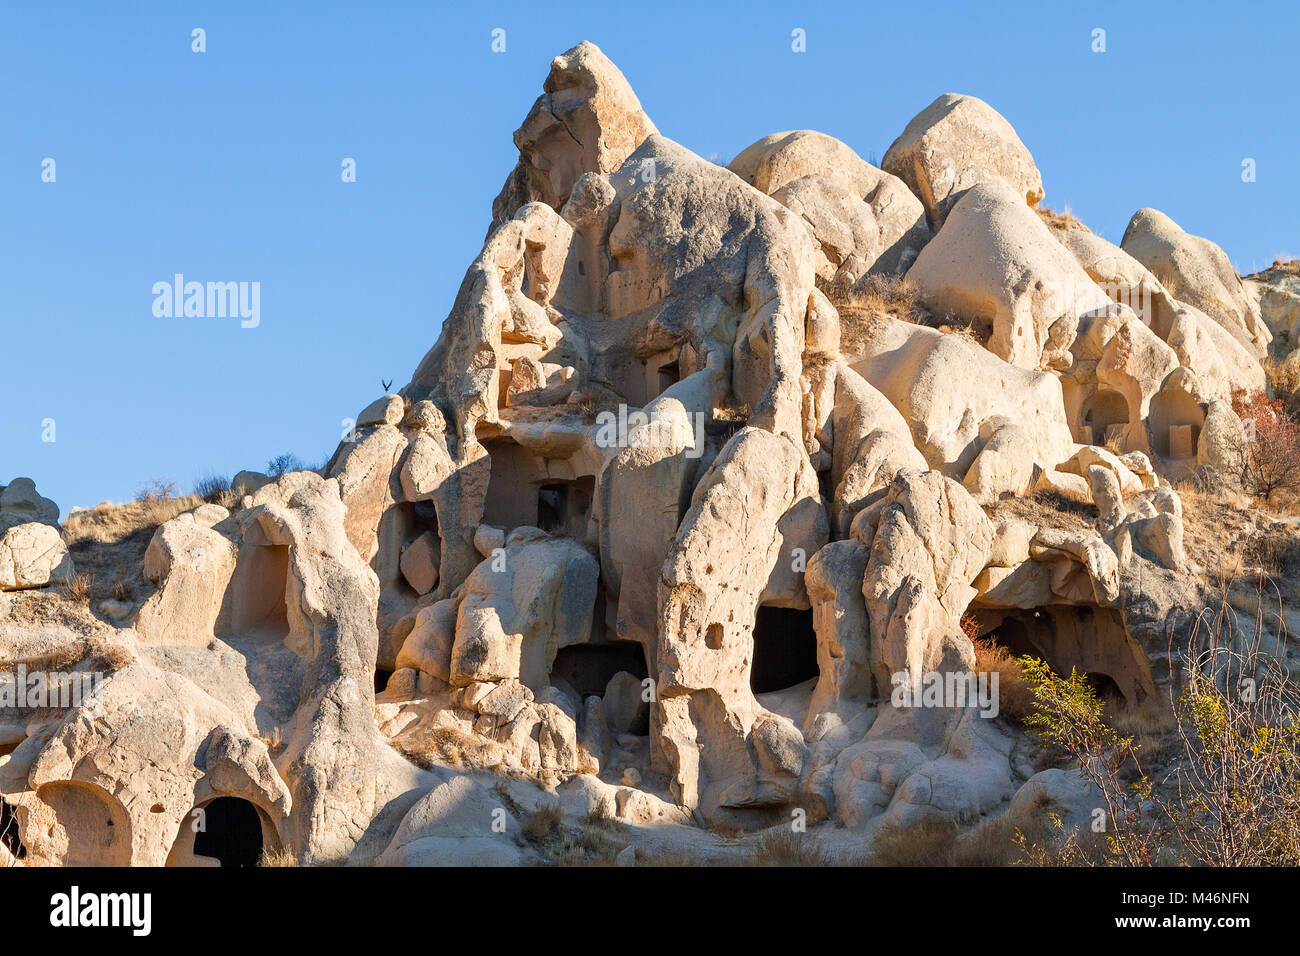 Le formazioni rocciose e insediamenti rupestri in Cappadocia, Turchia. Foto Stock